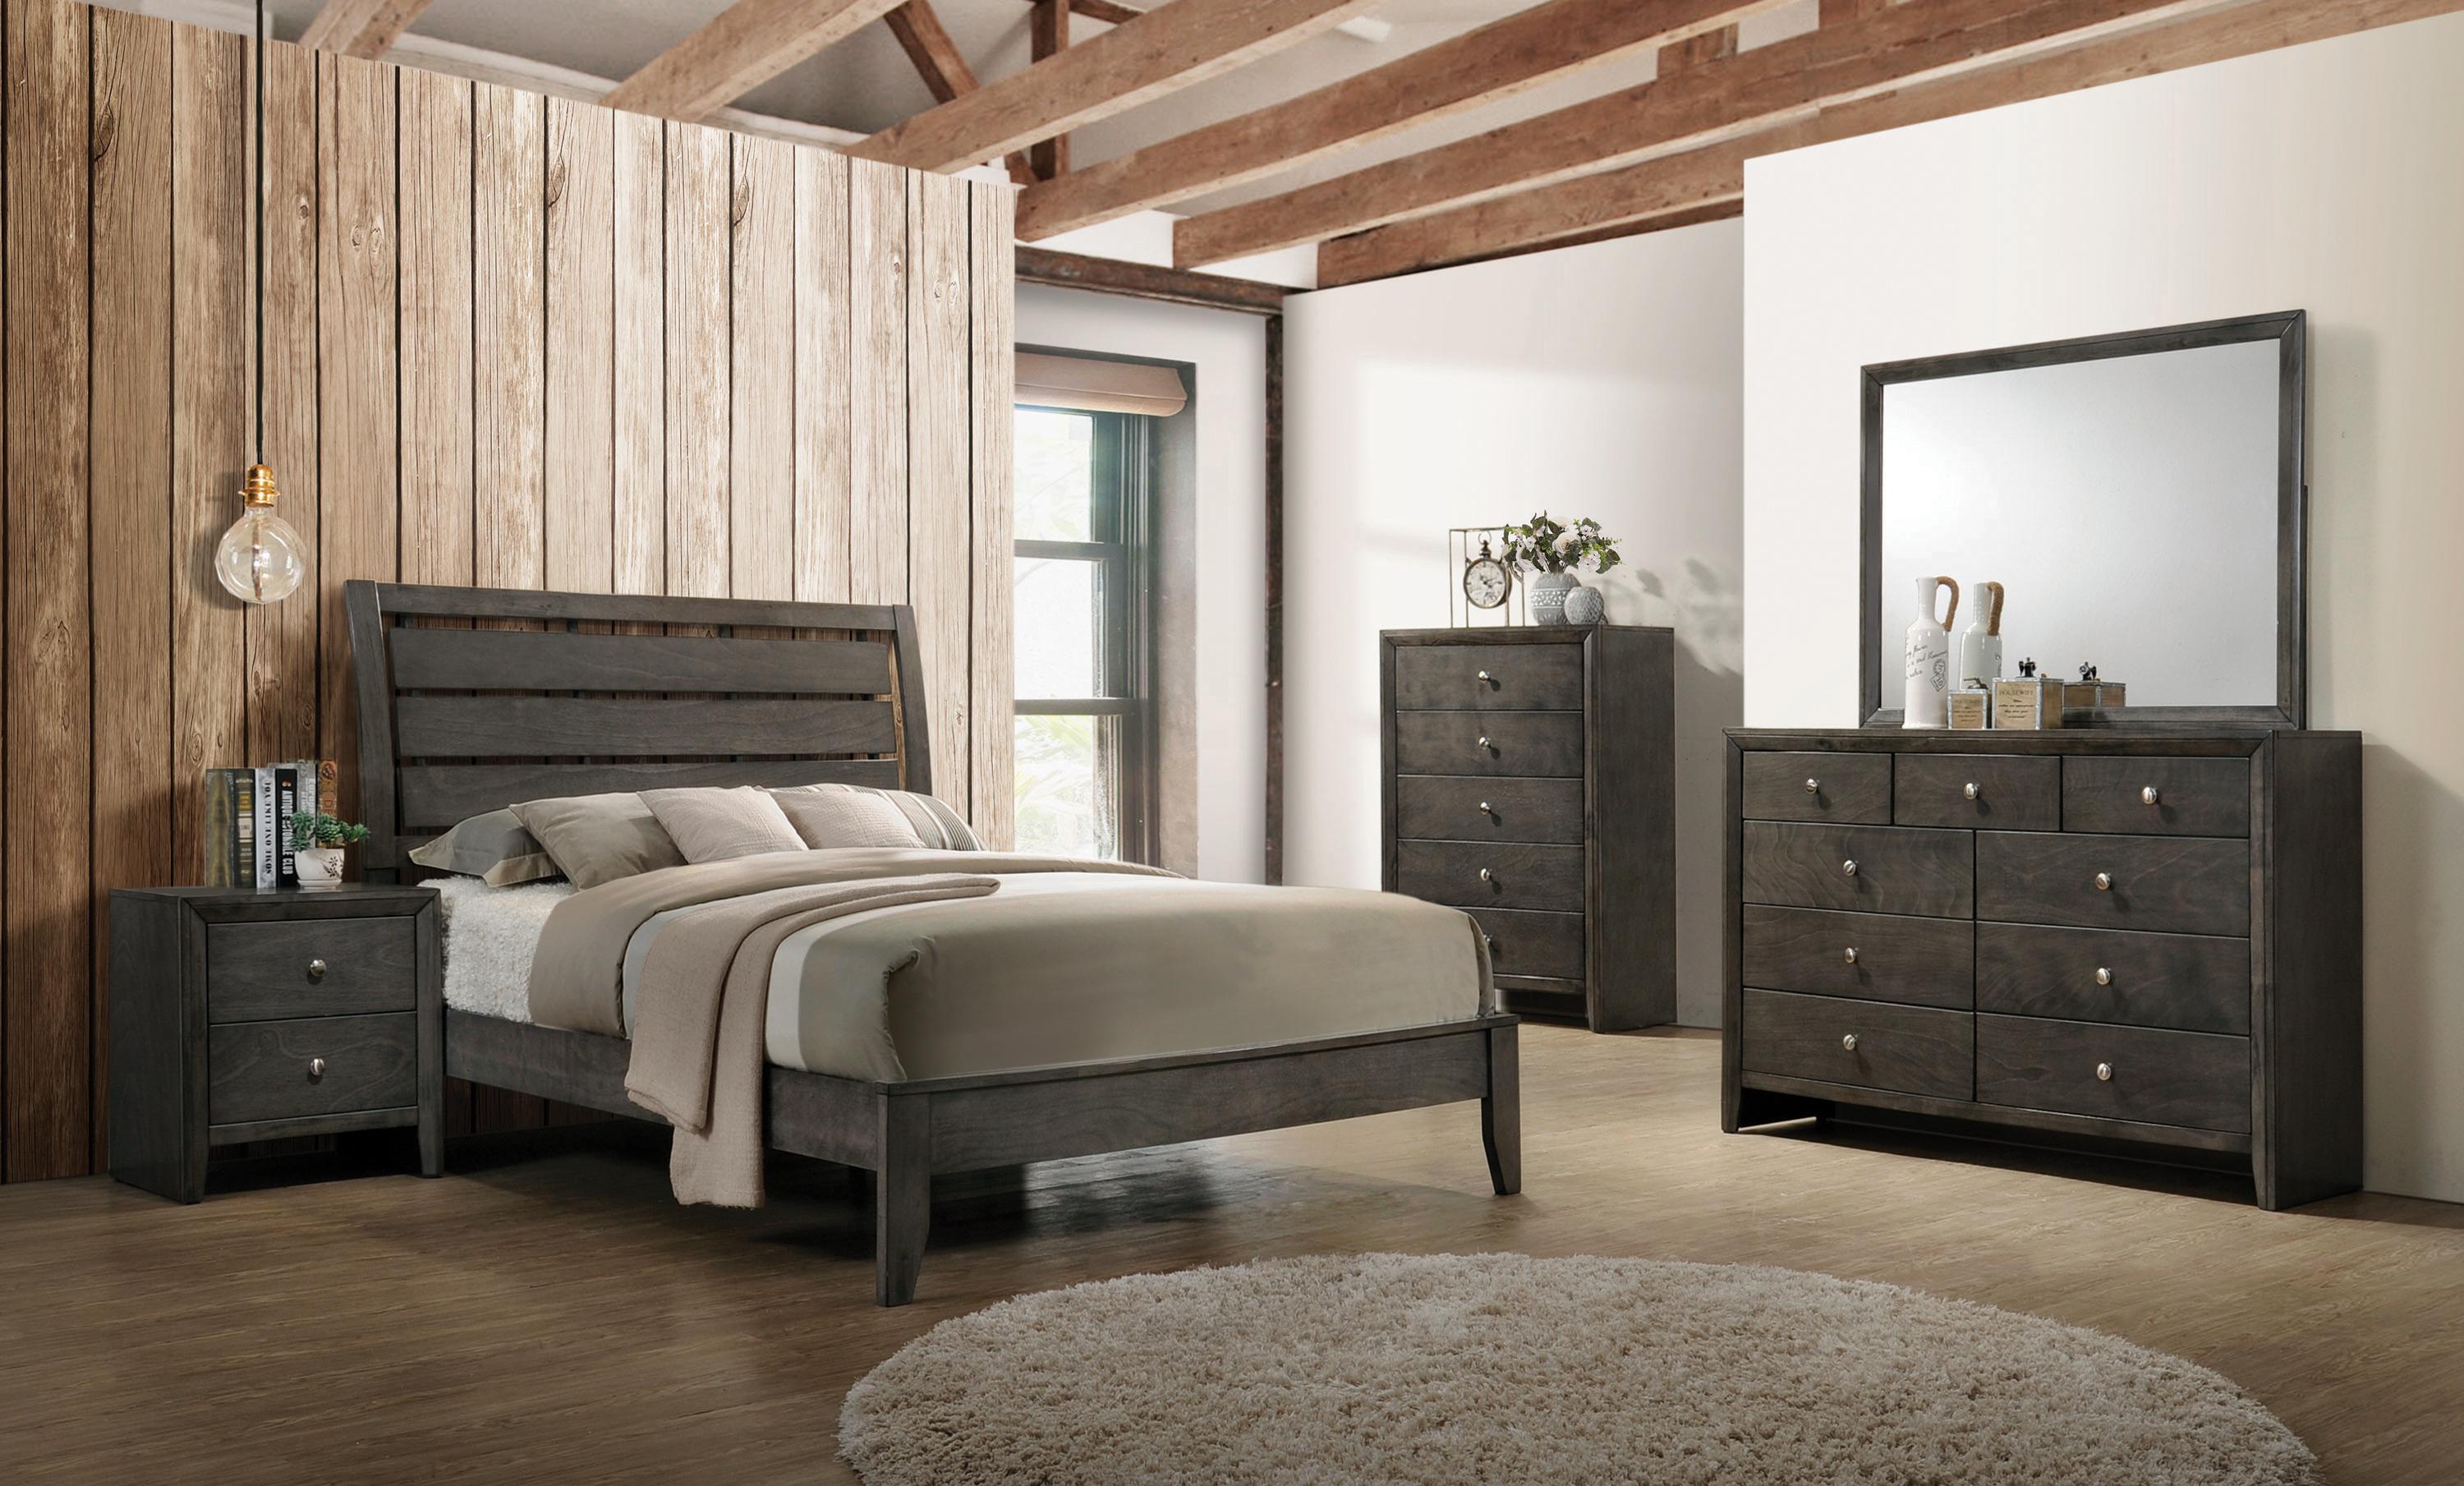 

    
Transitional Mod Gray Wood Queen Bedroom Set 3pcs Coaster 215841Q Serenity
